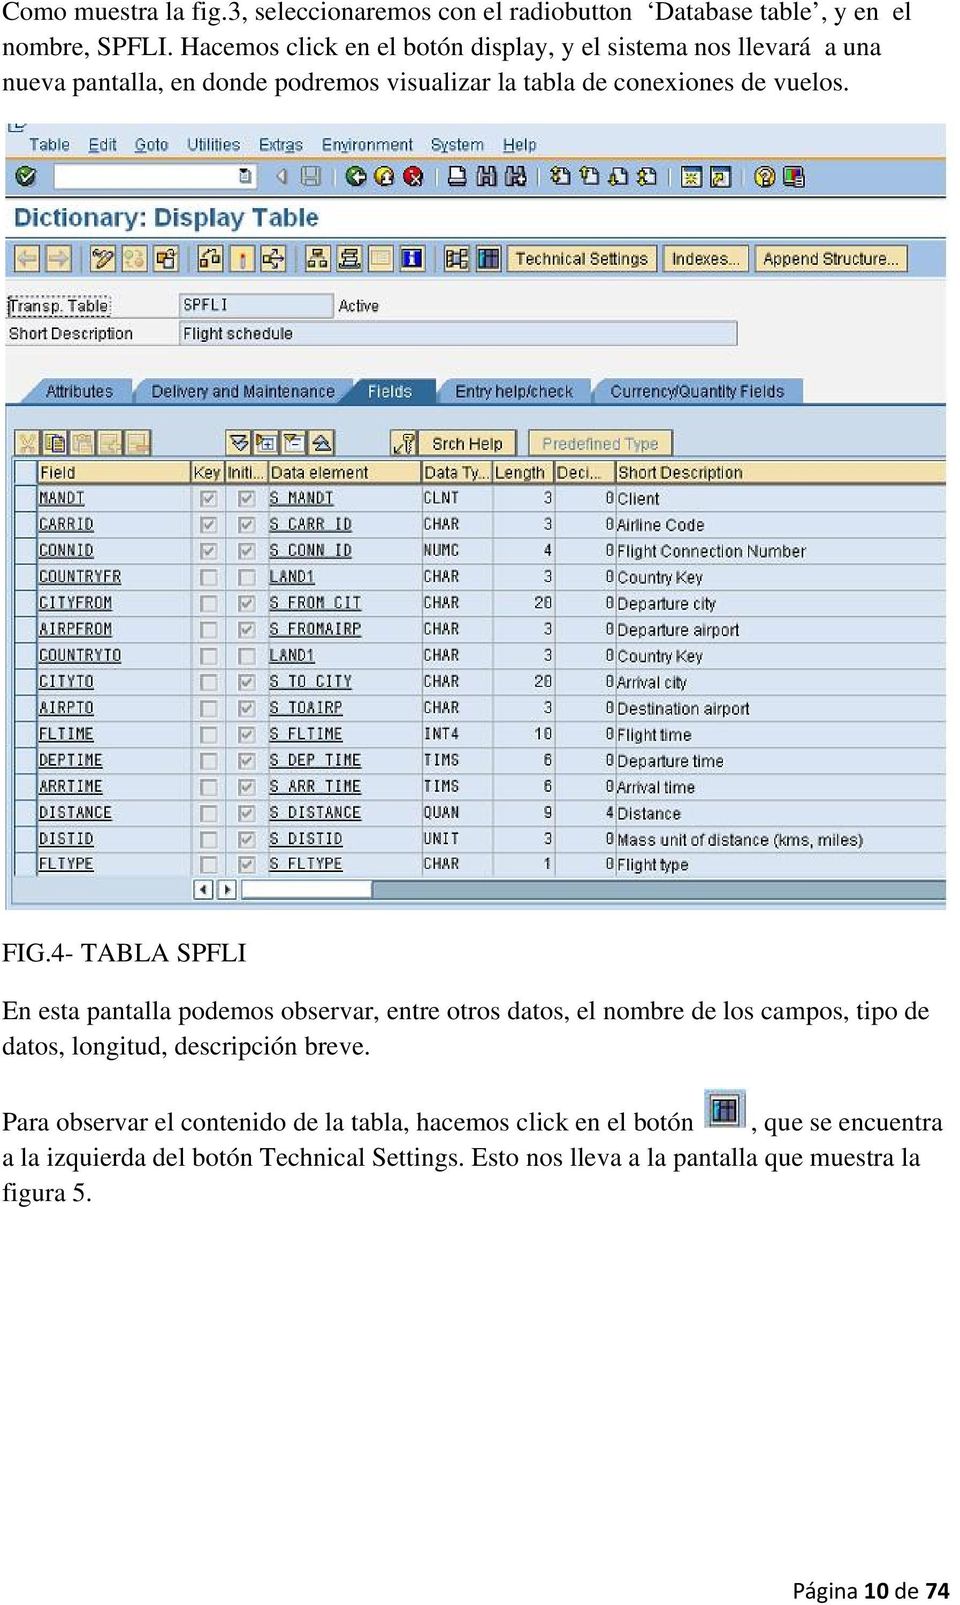 FIG.4- TABLA SPFLI En esta pantalla podemos observar, entre otros datos, el nombre de los campos, tipo de datos, longitud, descripción breve.